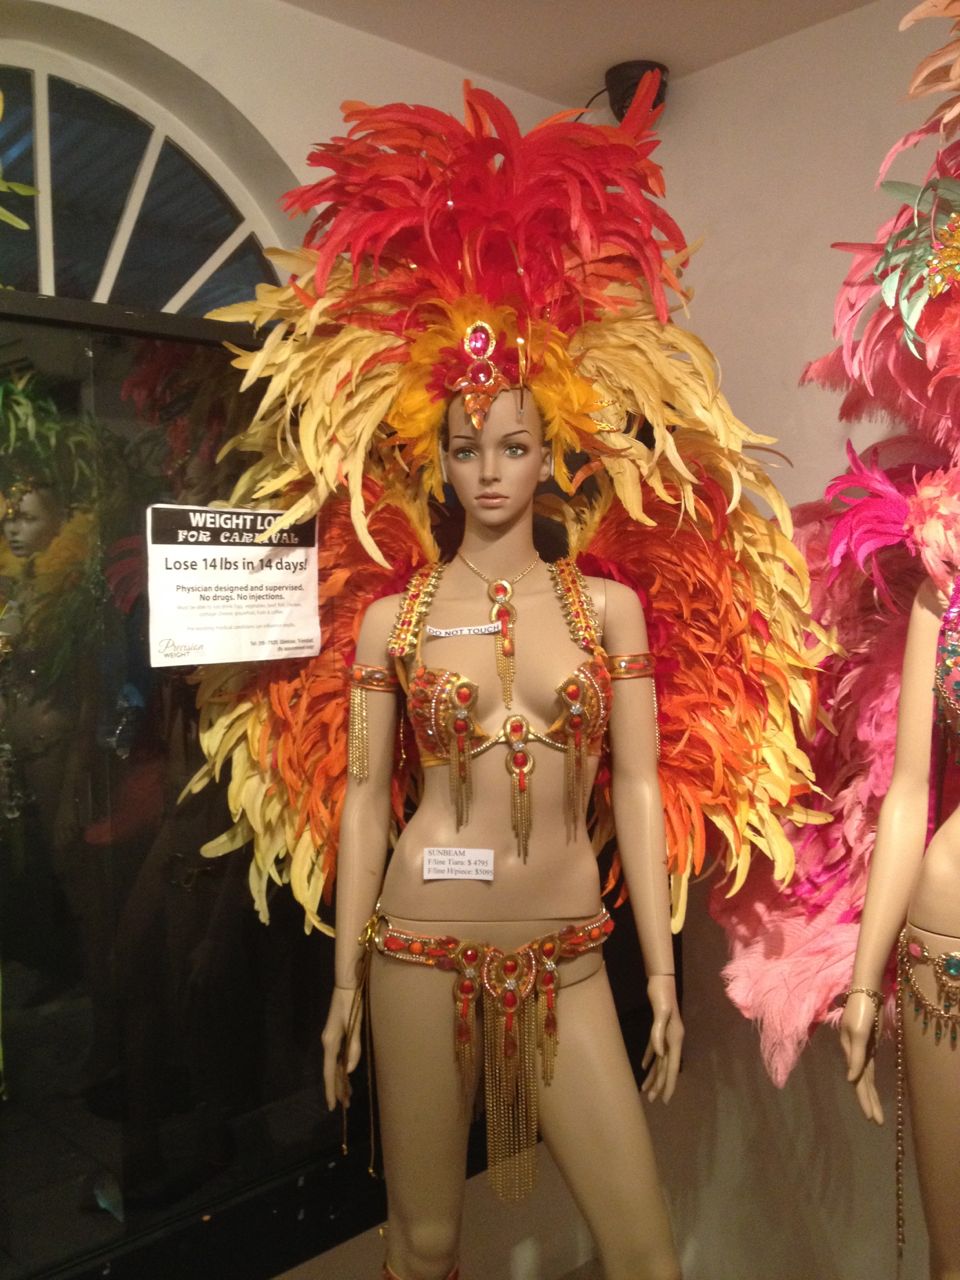 Leichte Bekleidung im Karneval in Trinidad oder sprechen wir eher von Körperschmuck